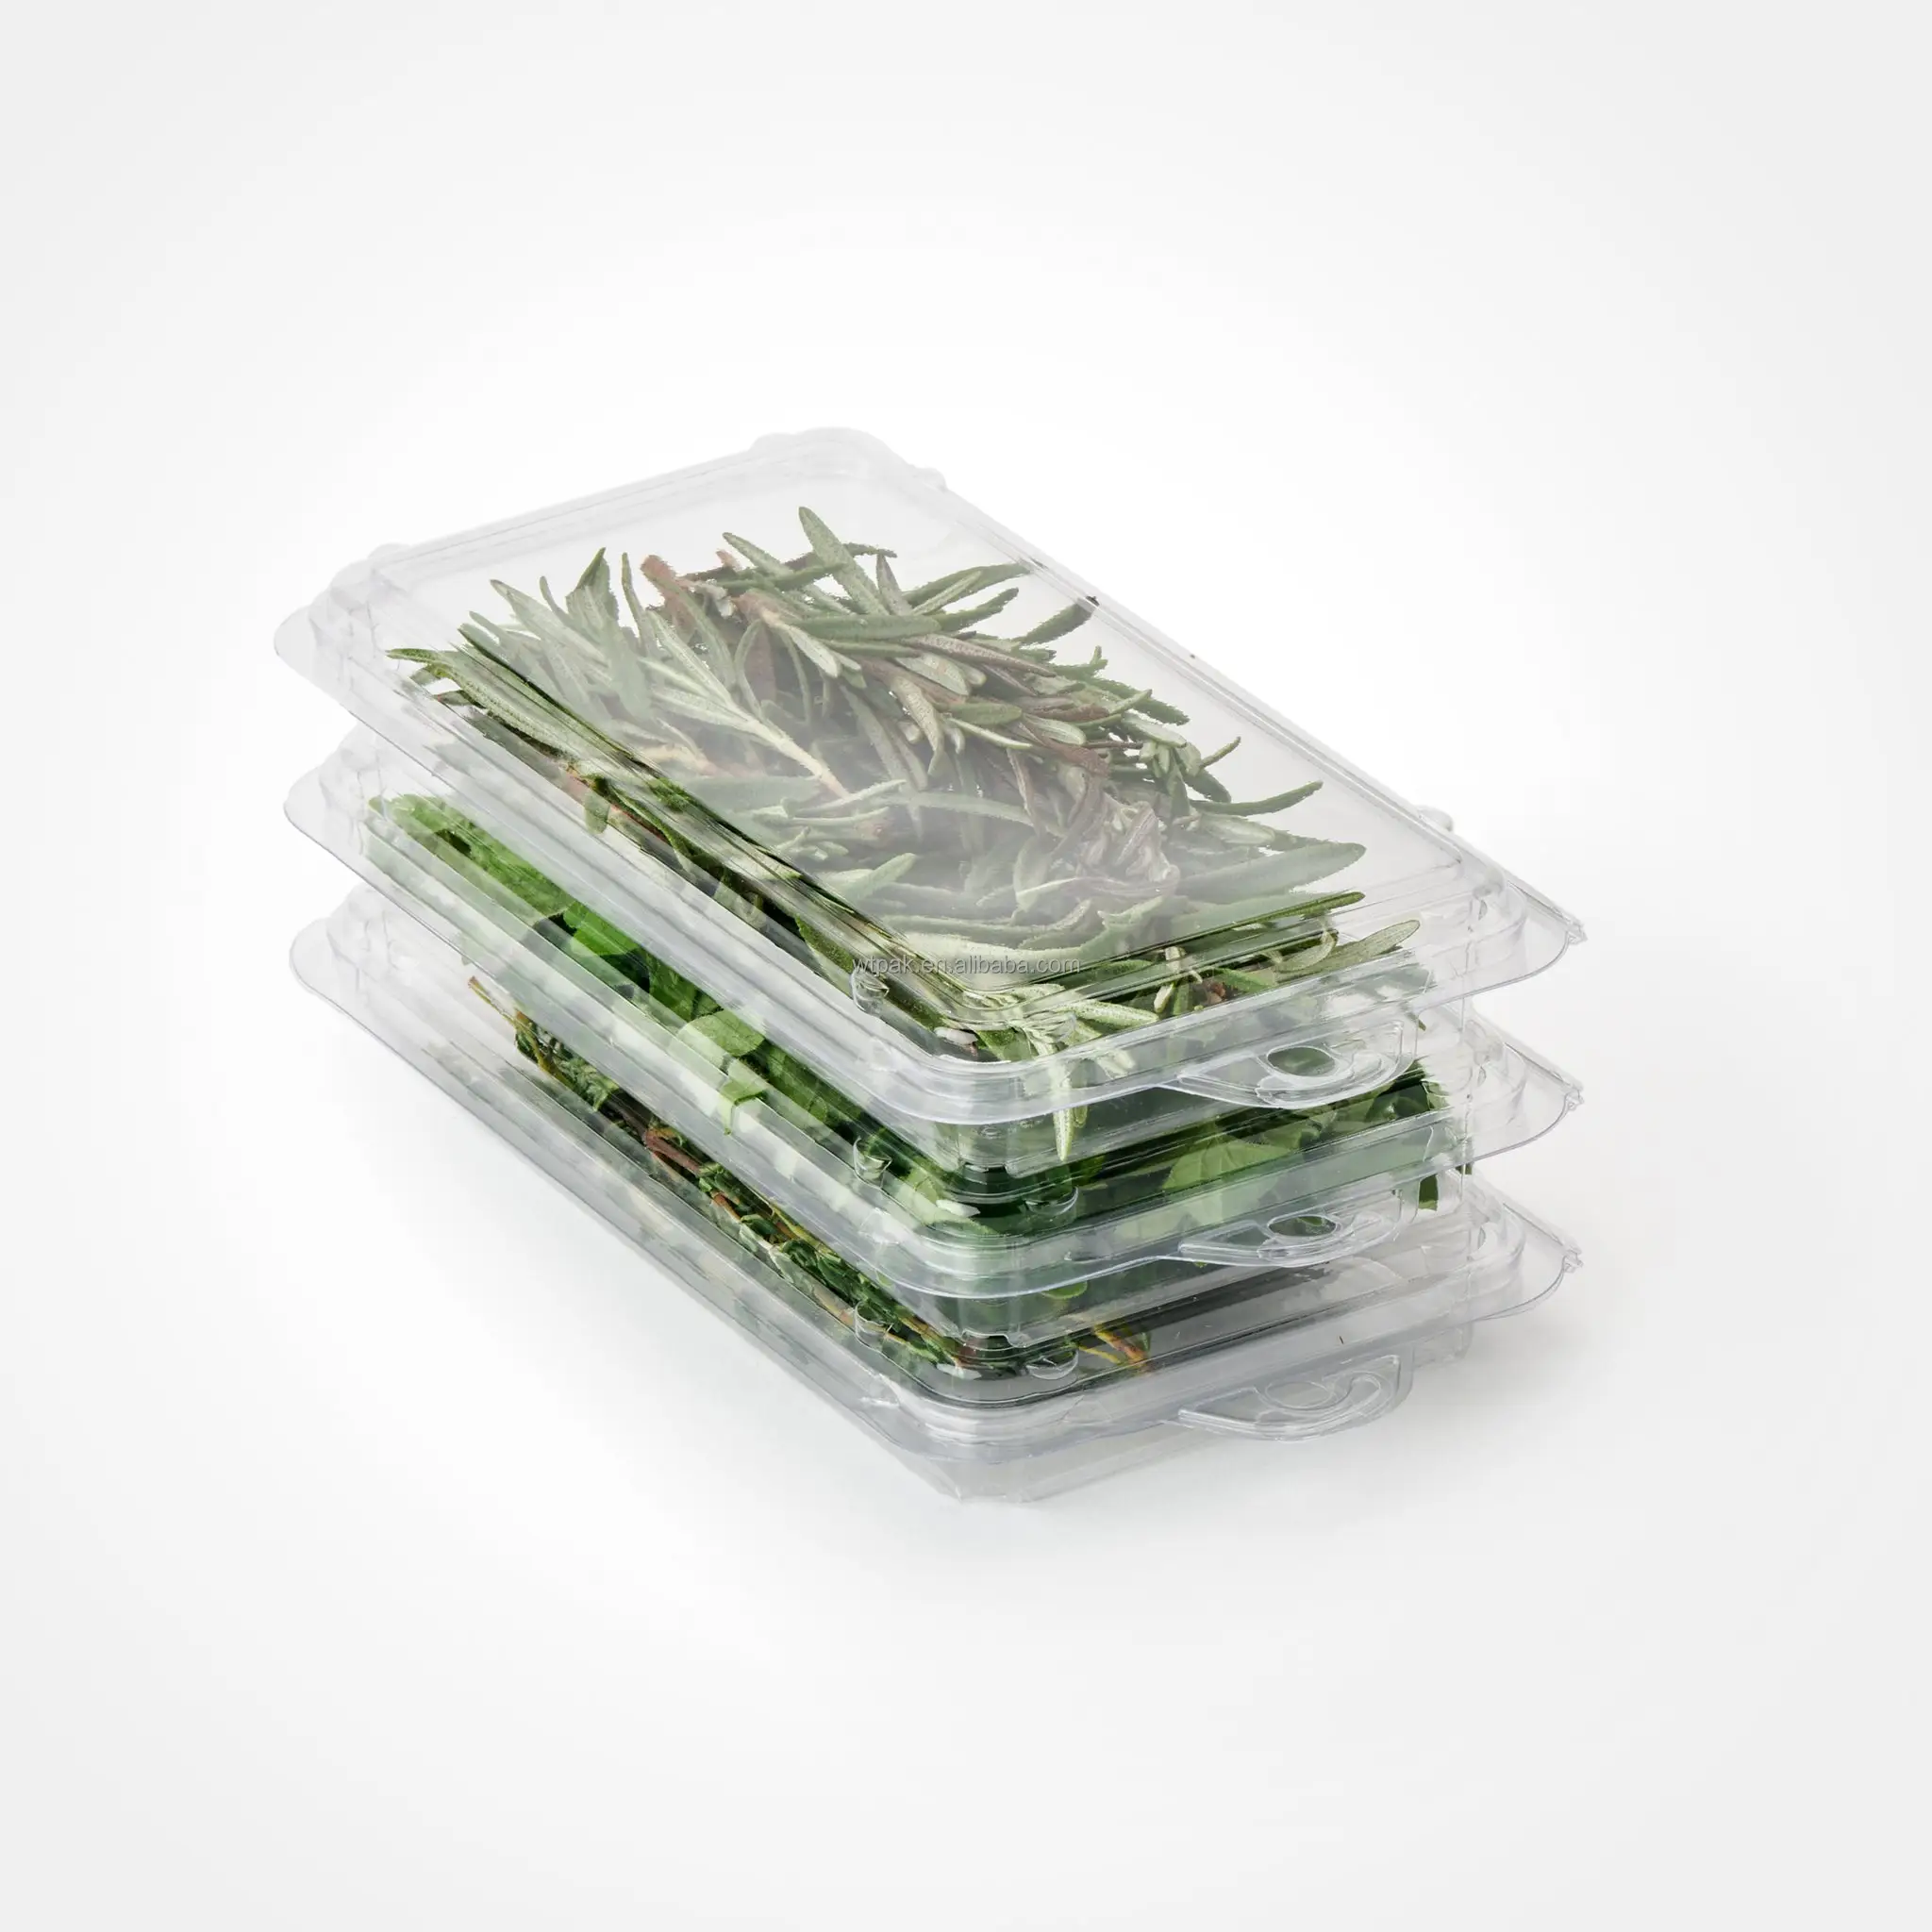 신선한 나물을 위한 경첩을 단 뚜껑 플라스틱 물집 조가비 포장 상자